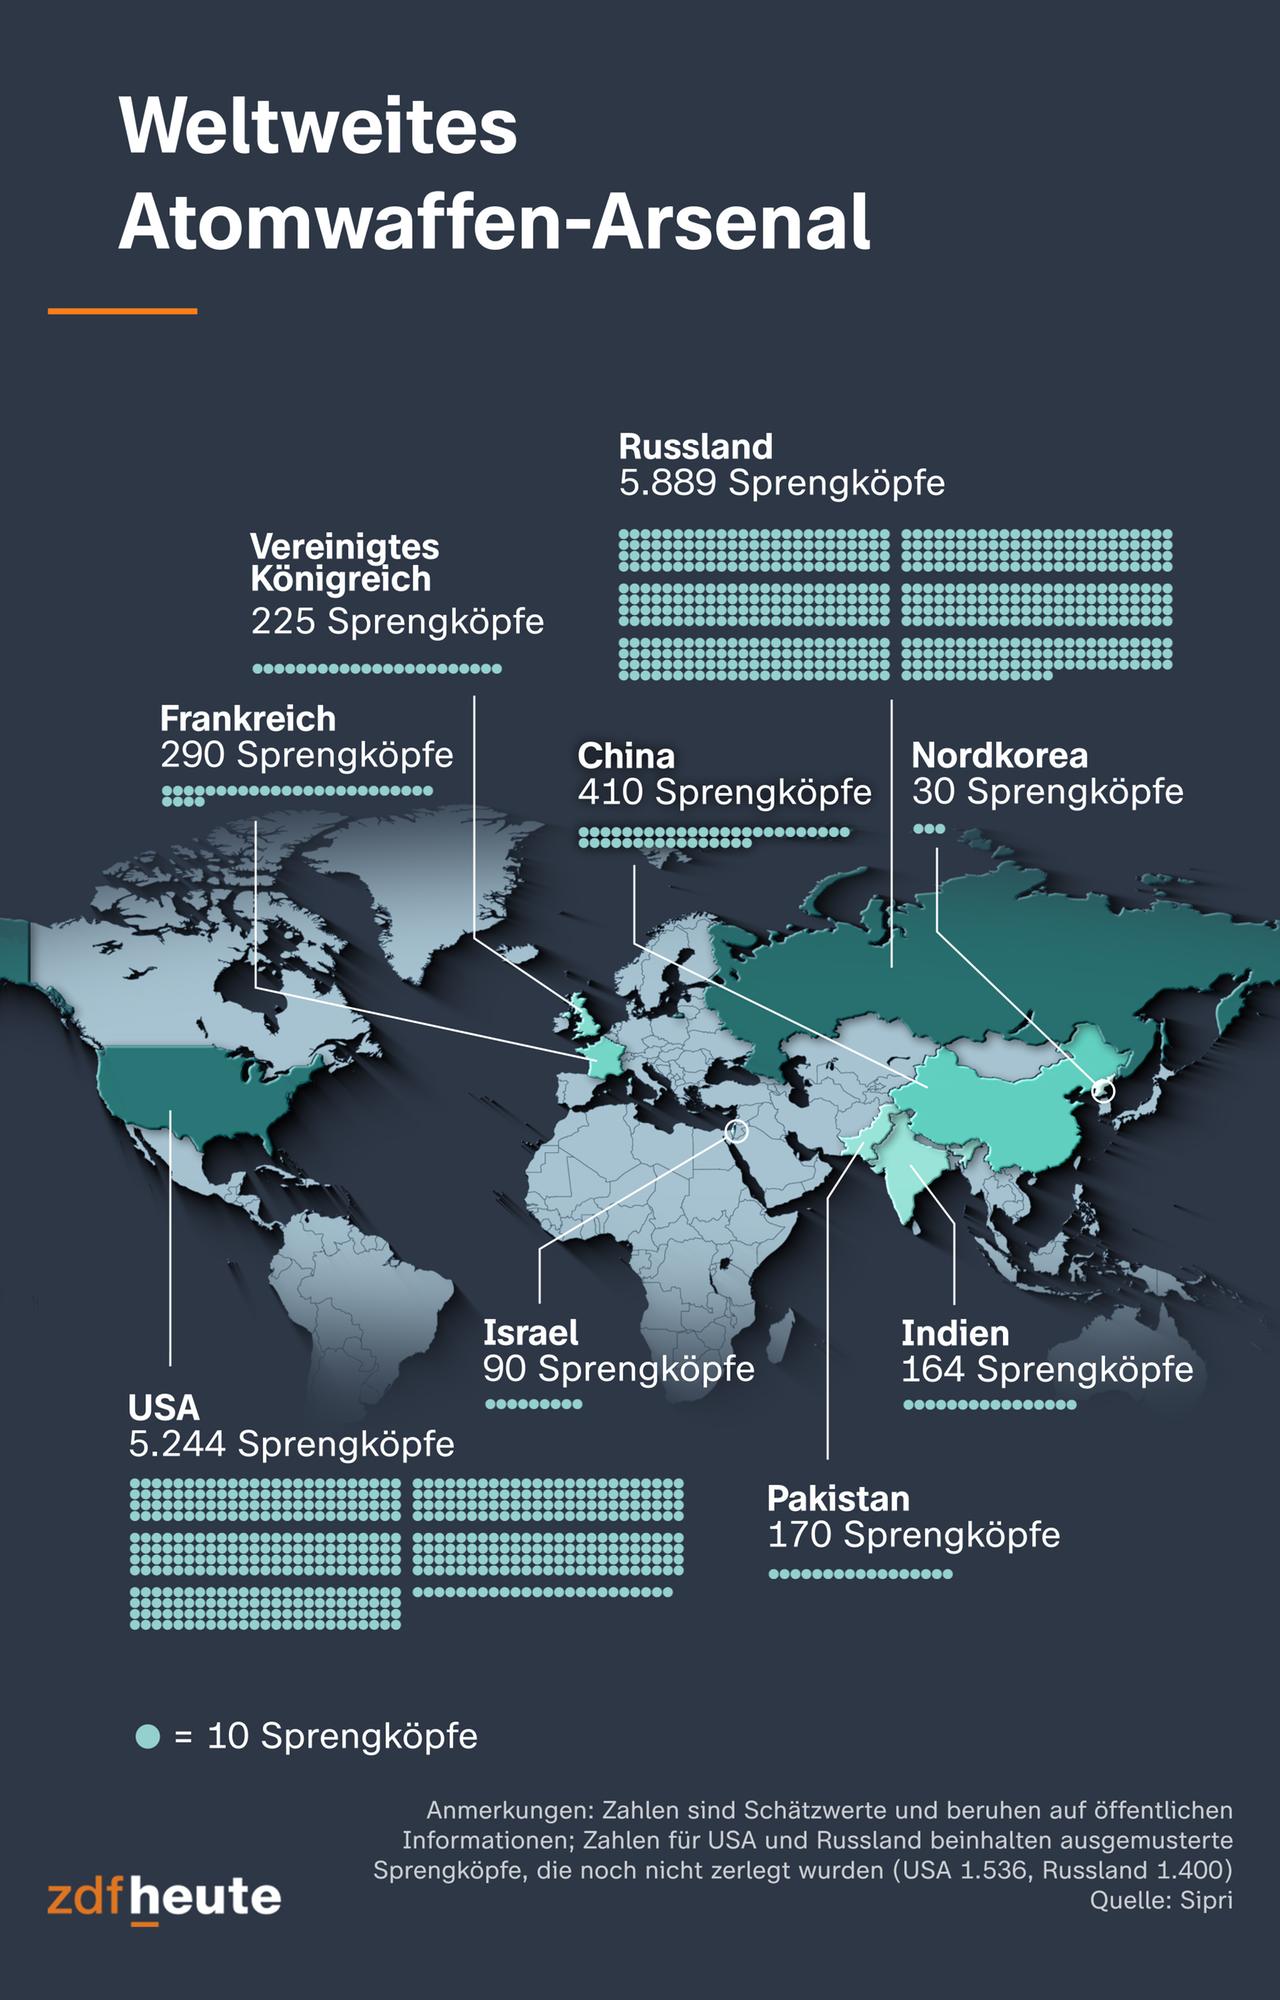 Auf der Infografik sind die weltweiten Atomwaffen-Arsenale dargestellt. Dabei wird deutlich: Russland und die USA haben mit über 5.000 Sprengköpfen den größten Bestand - gefolgt von China und Frankreich.